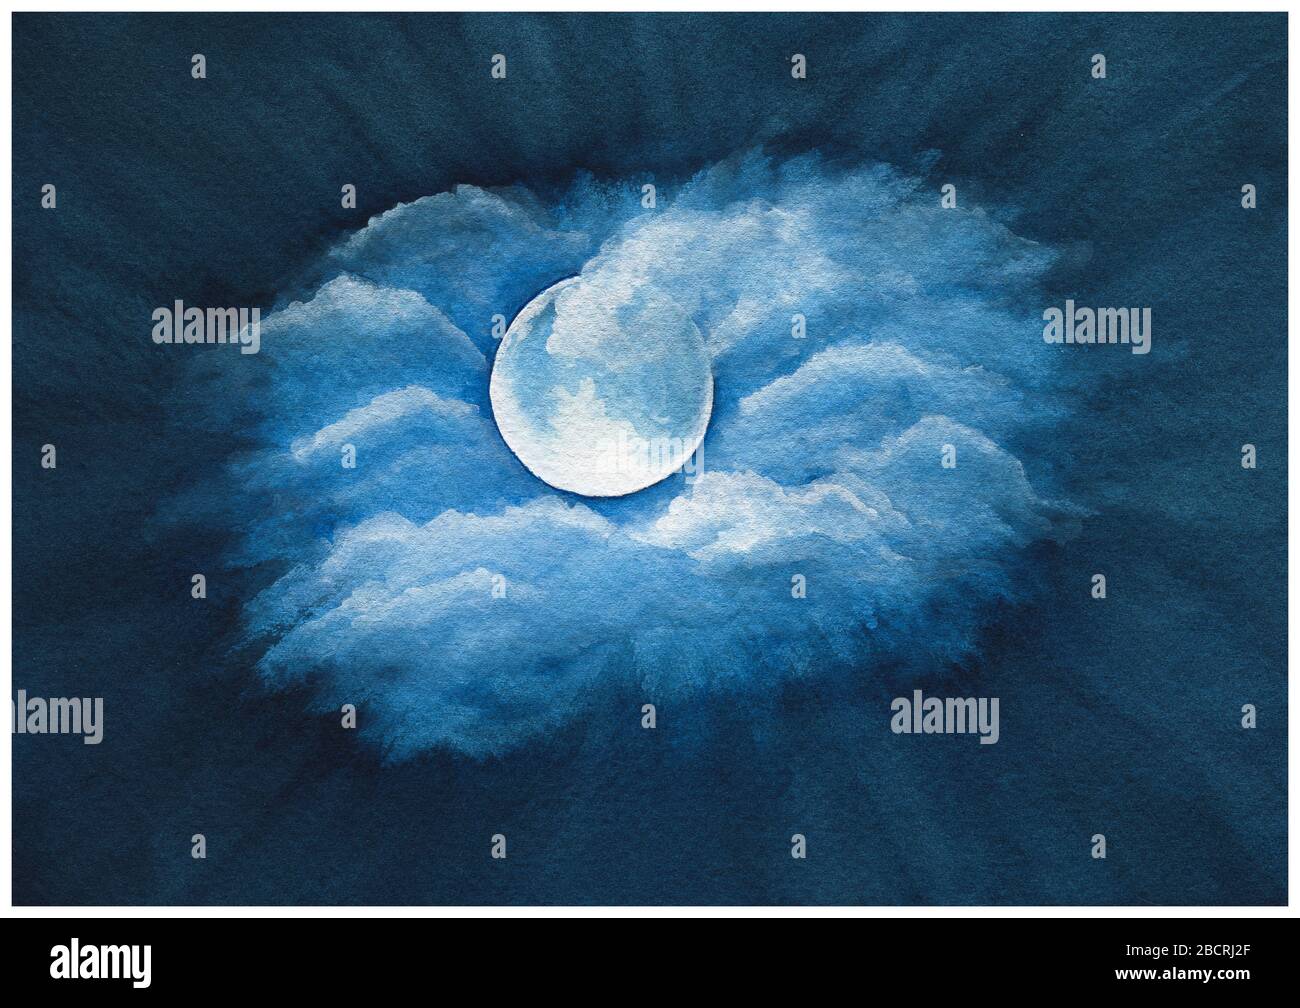 blu navy cielo notte sfondo astratto, romantico acquerello luna notte cielo scena, dipinto a mano illustrazione con luna e nuvole sul cielo notturno Foto Stock